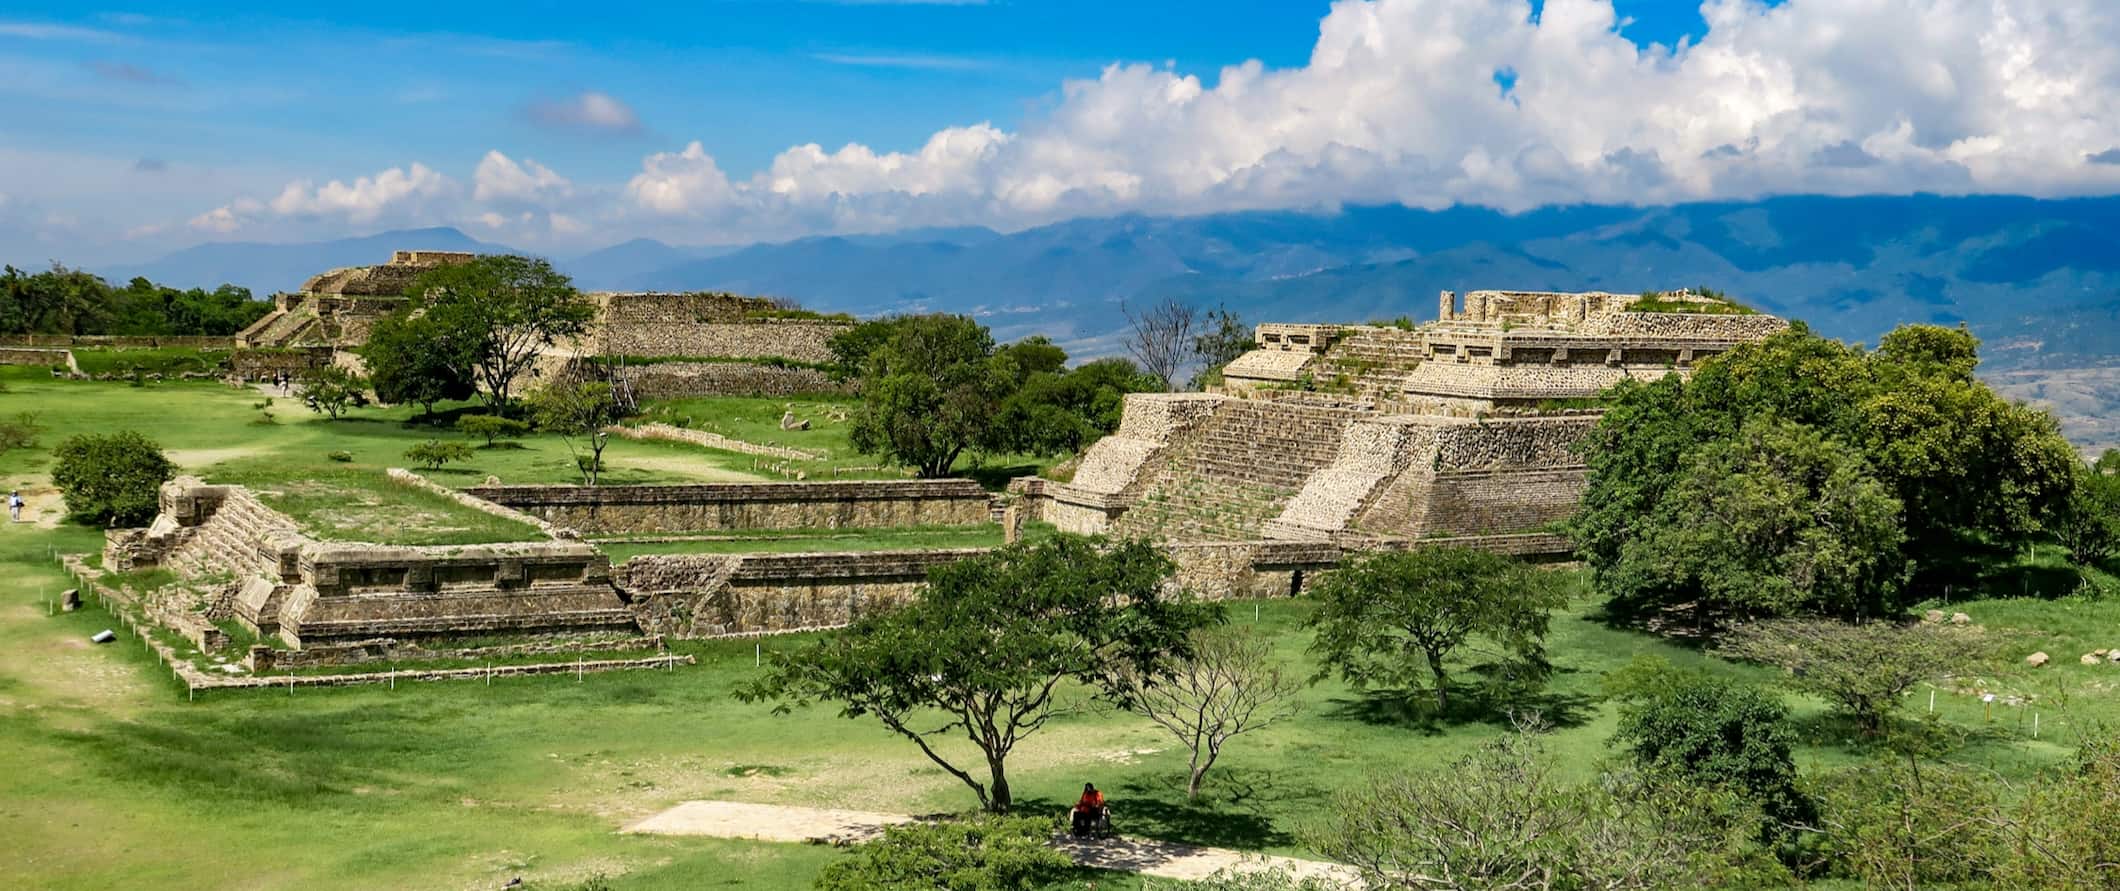 Antiga cidade de Monte Alban e suas ruínas históricas perto de Oaxaca, México